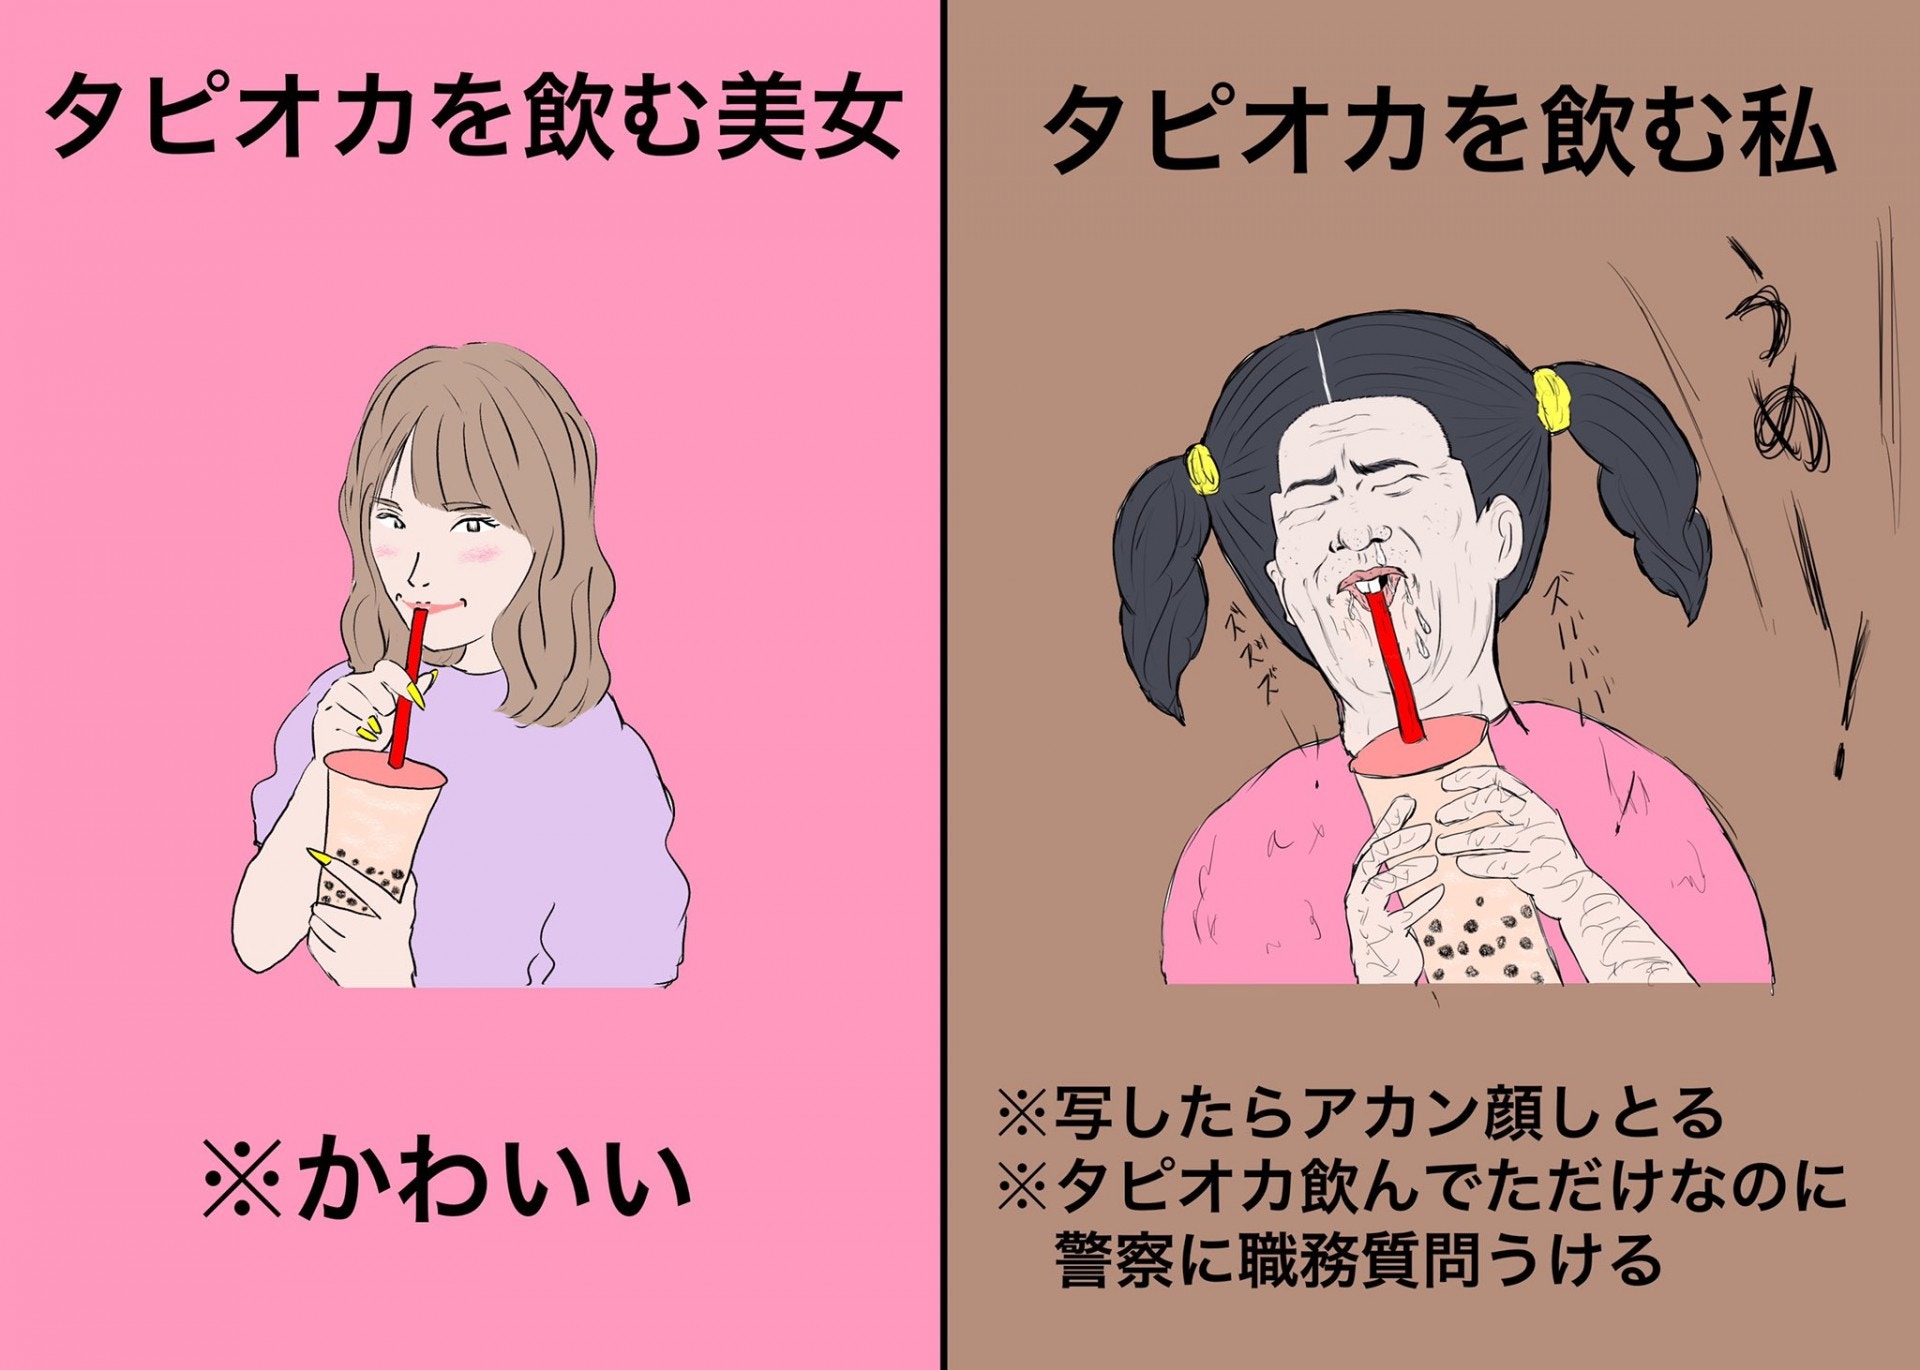 日本 美女vs素人 搞笑插畫女生醜態有共鳴 是我與美女的距離